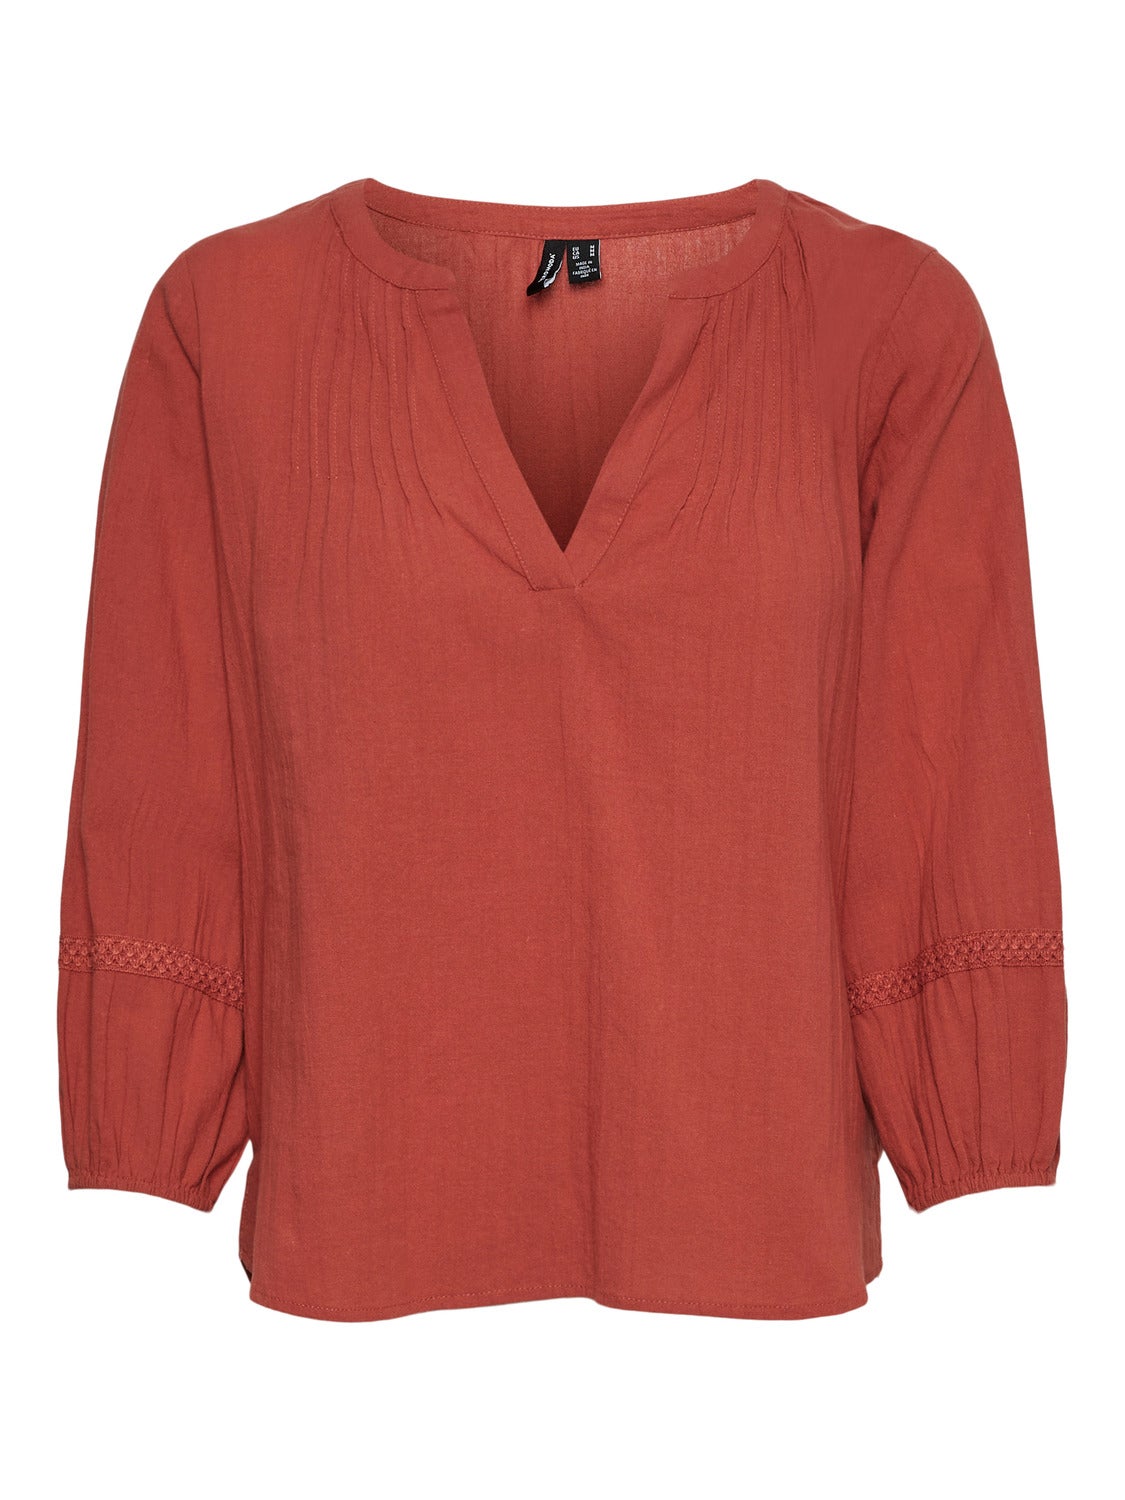 DAMEN Hemden & T-Shirts Bluse Basisch Rabatt 95 % Vero Moda Bluse Orange S 